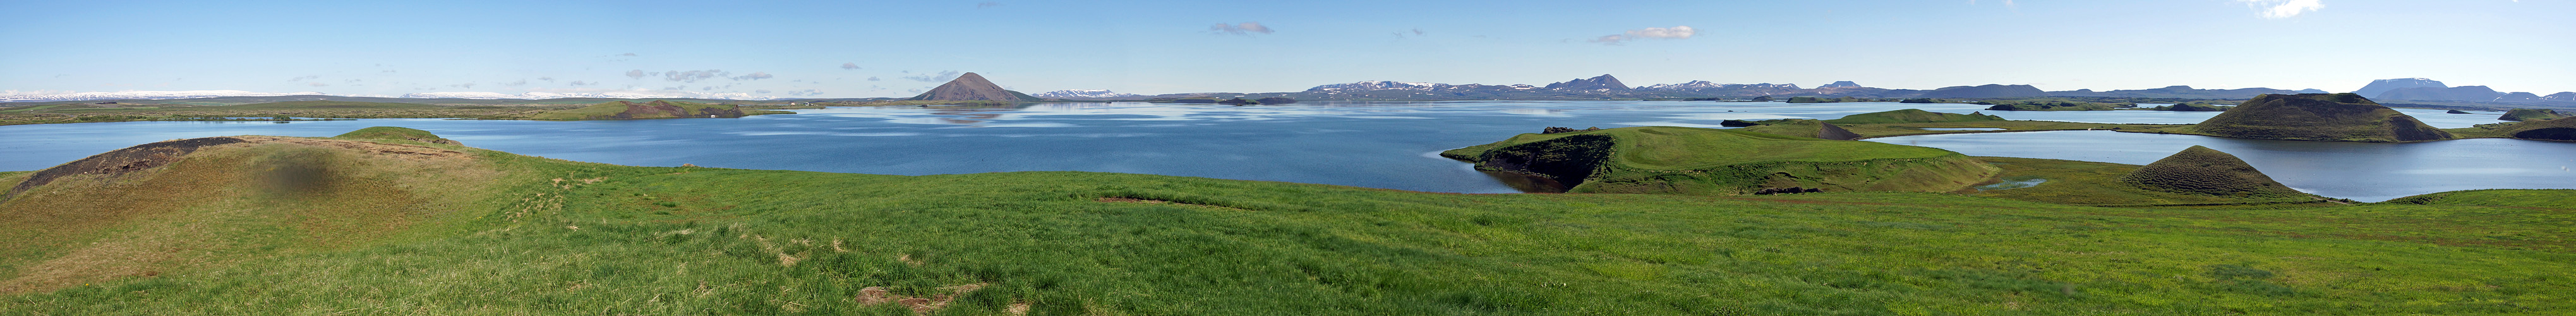 Photo panoramique du lac Mývatn